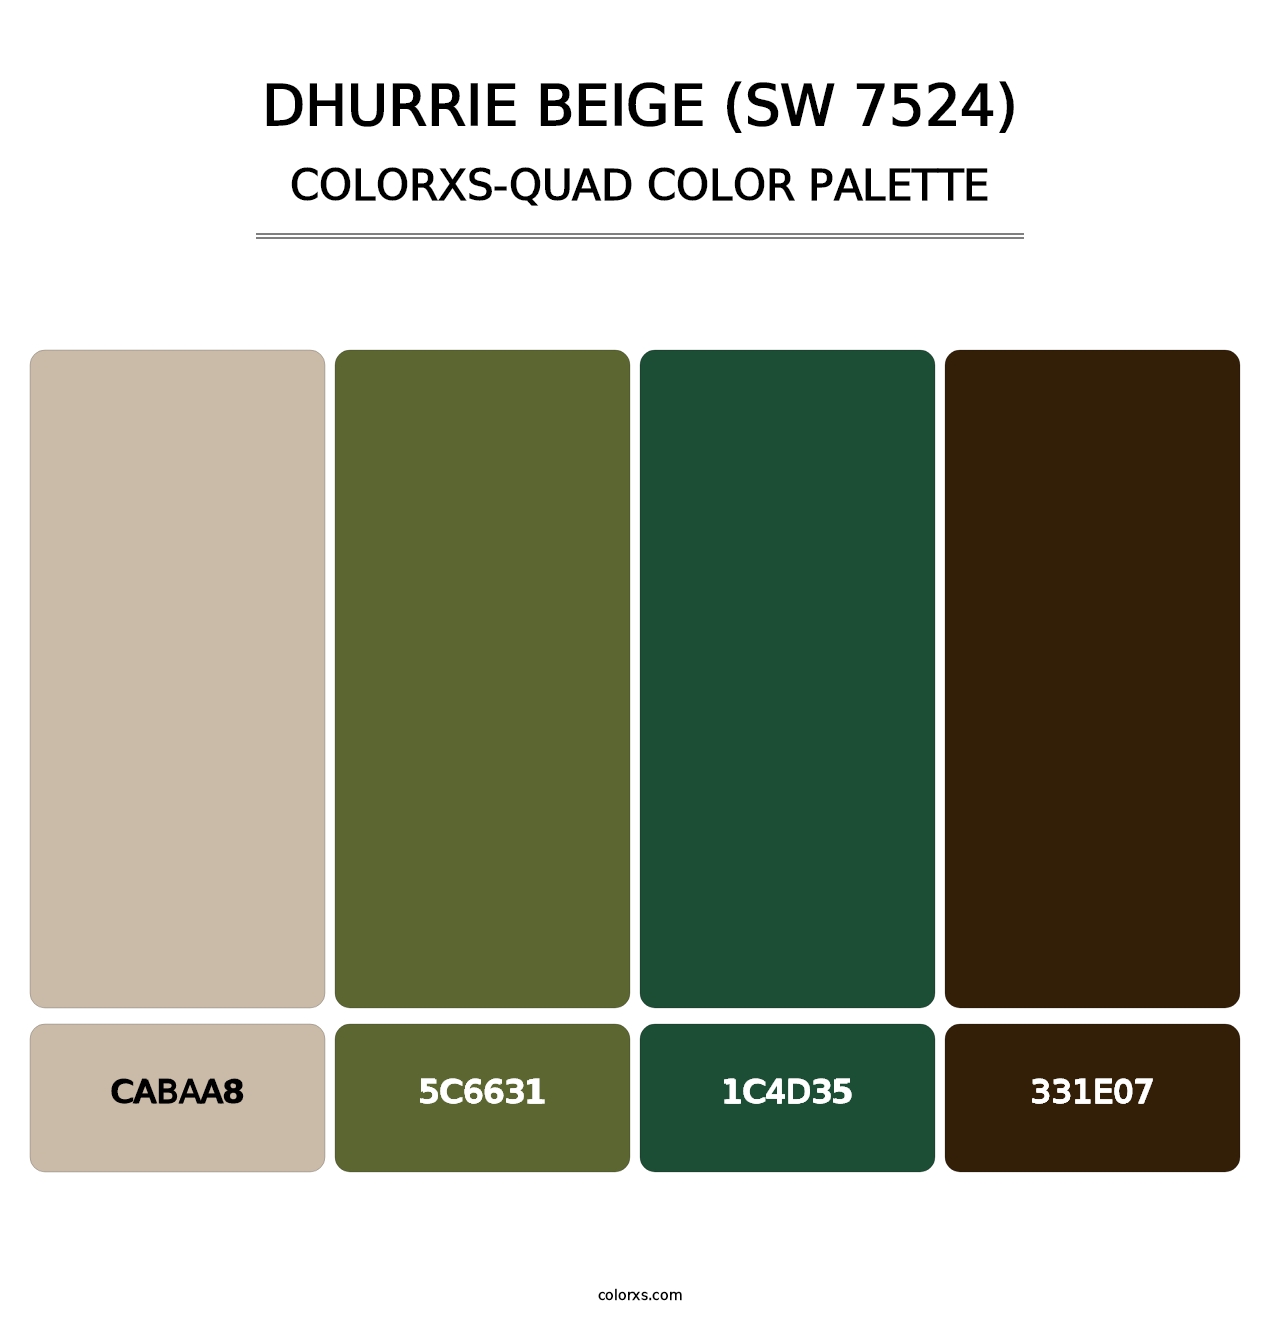 Dhurrie Beige (SW 7524) - Colorxs Quad Palette